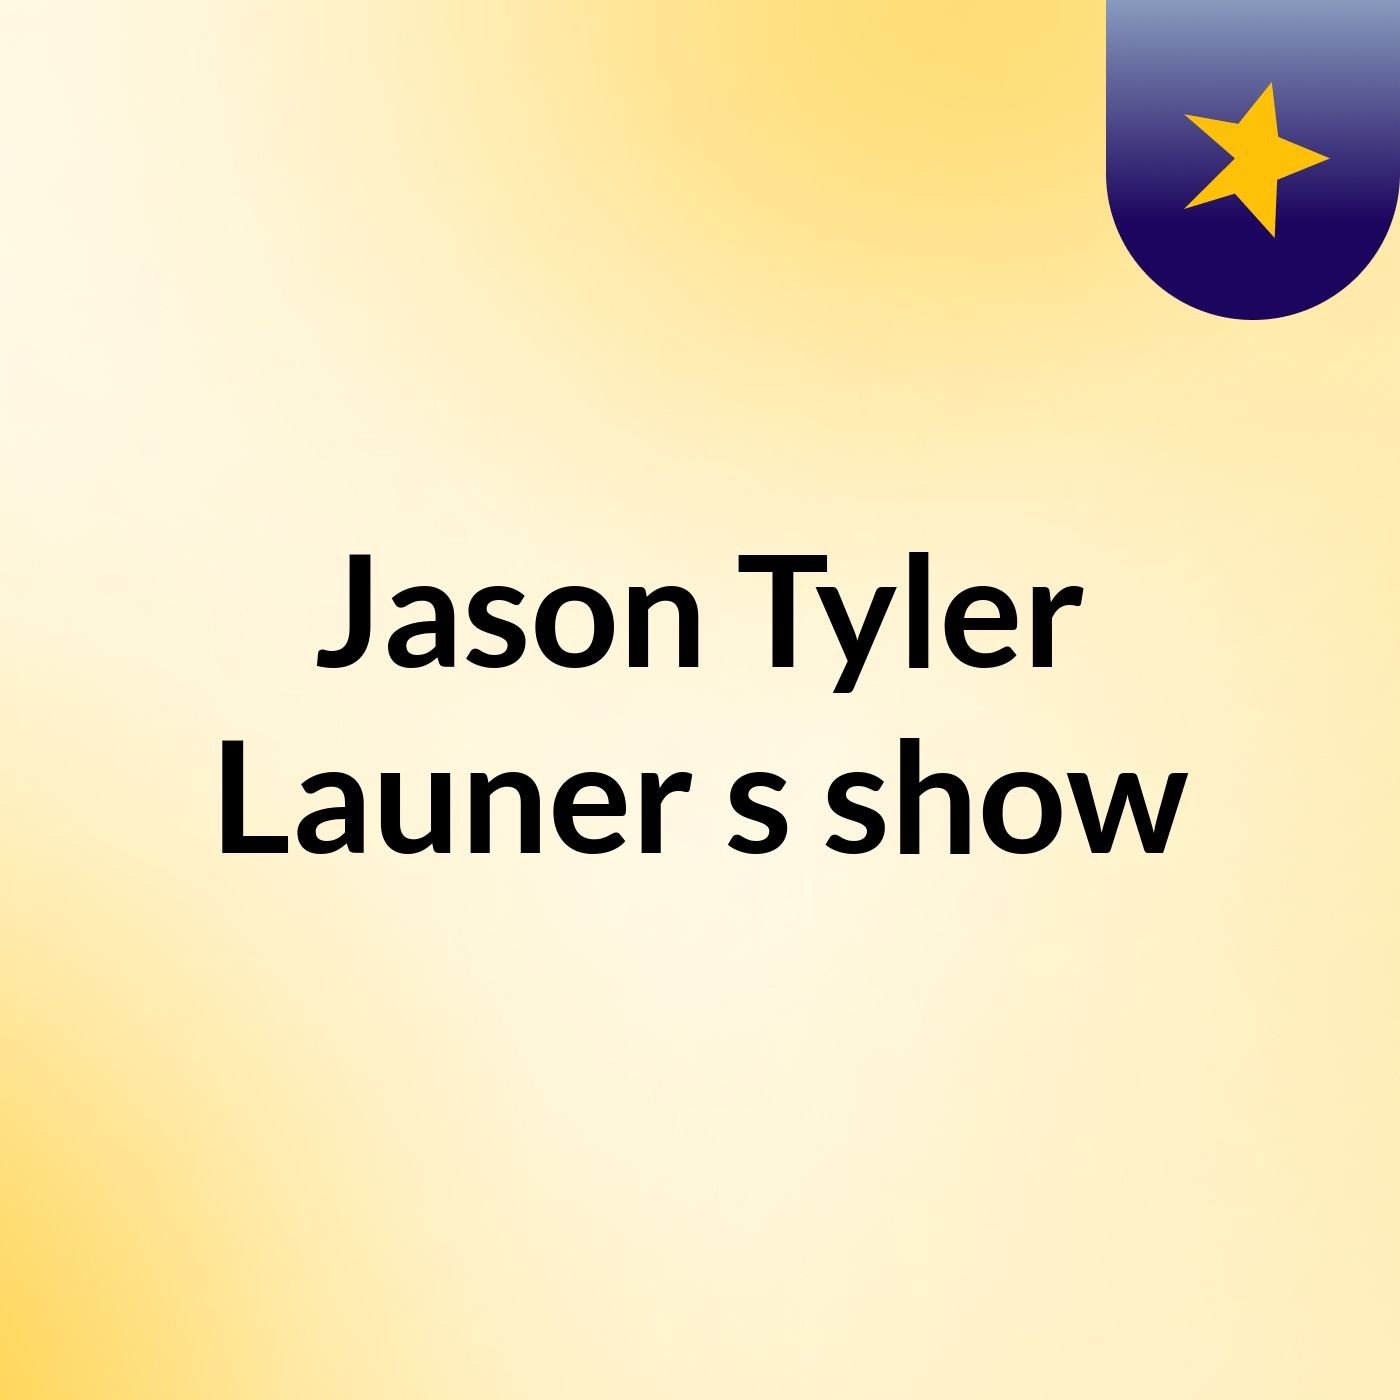 Jason Tyler Launer's show